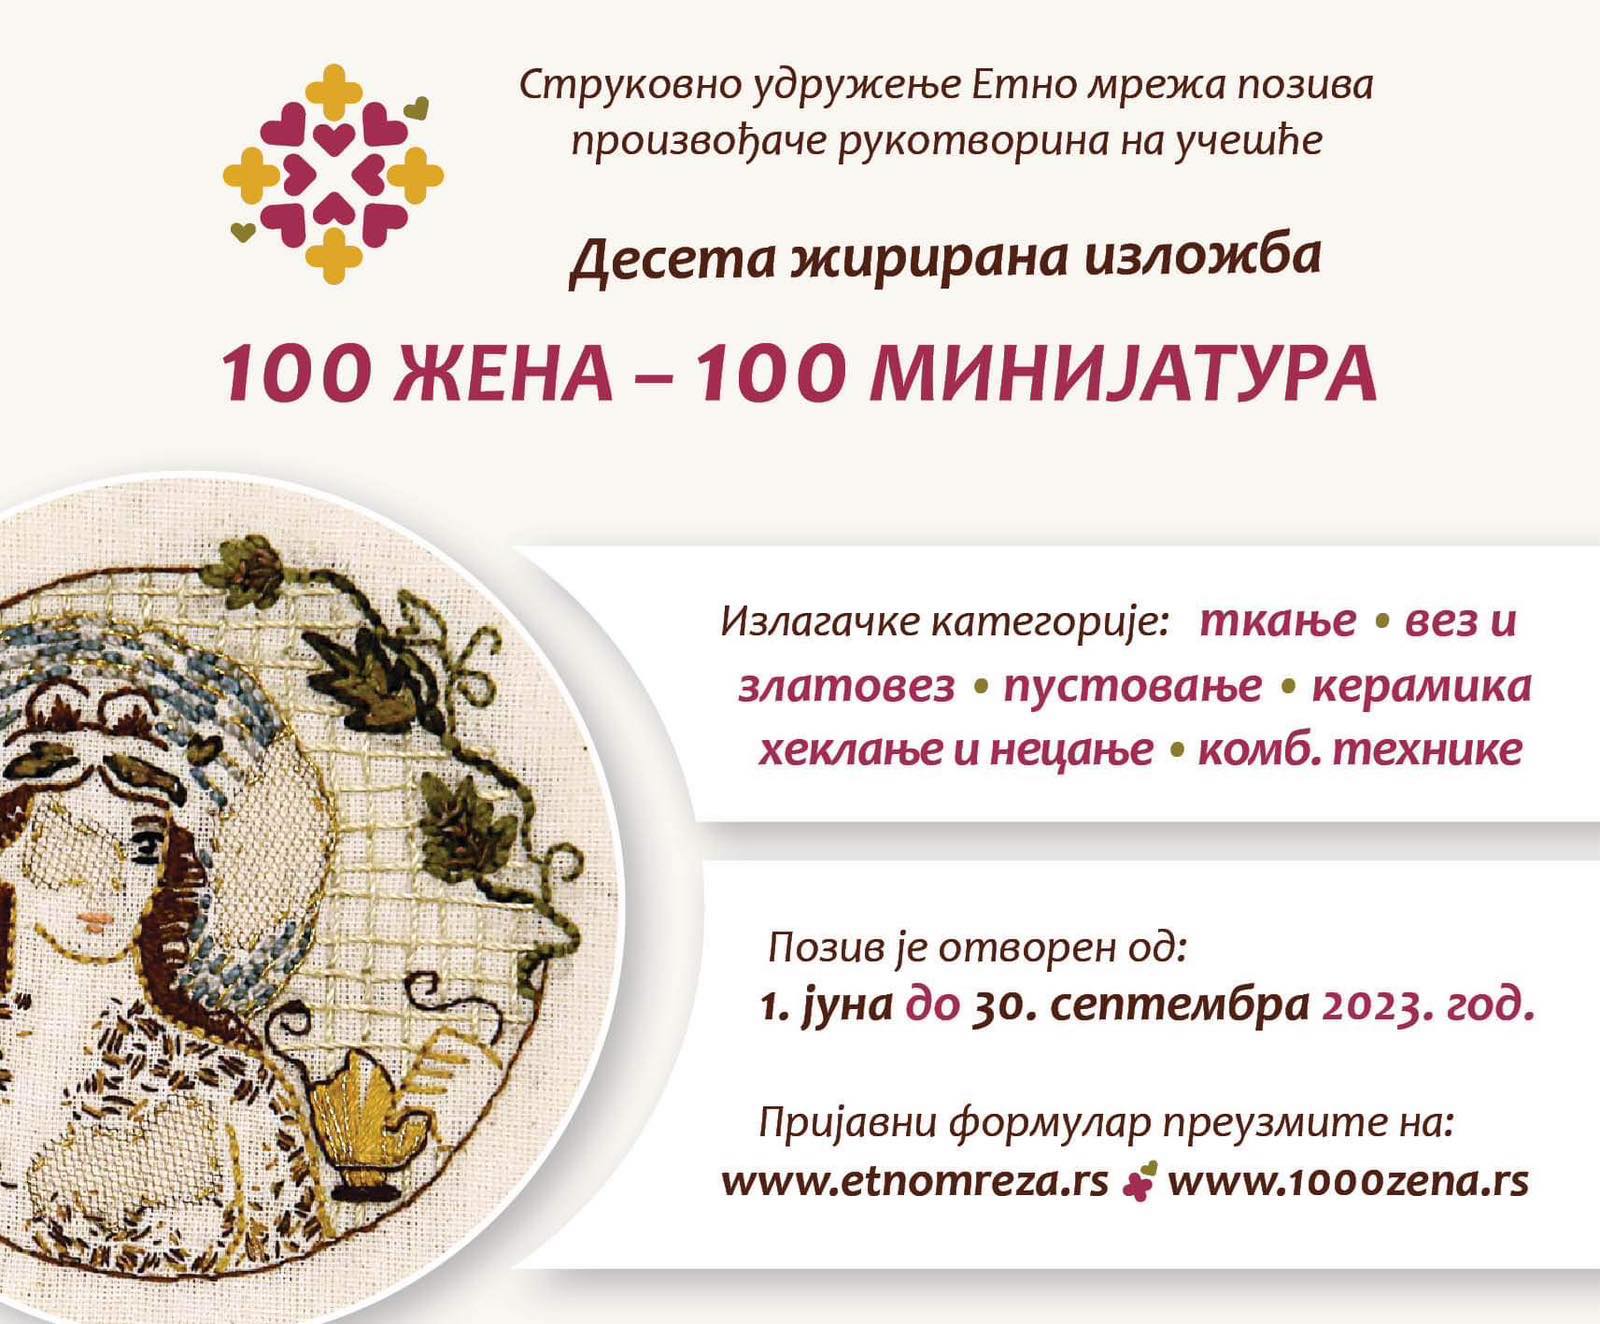 Etno mreža / Kratak poziv minijature_logo-page0001.jpg